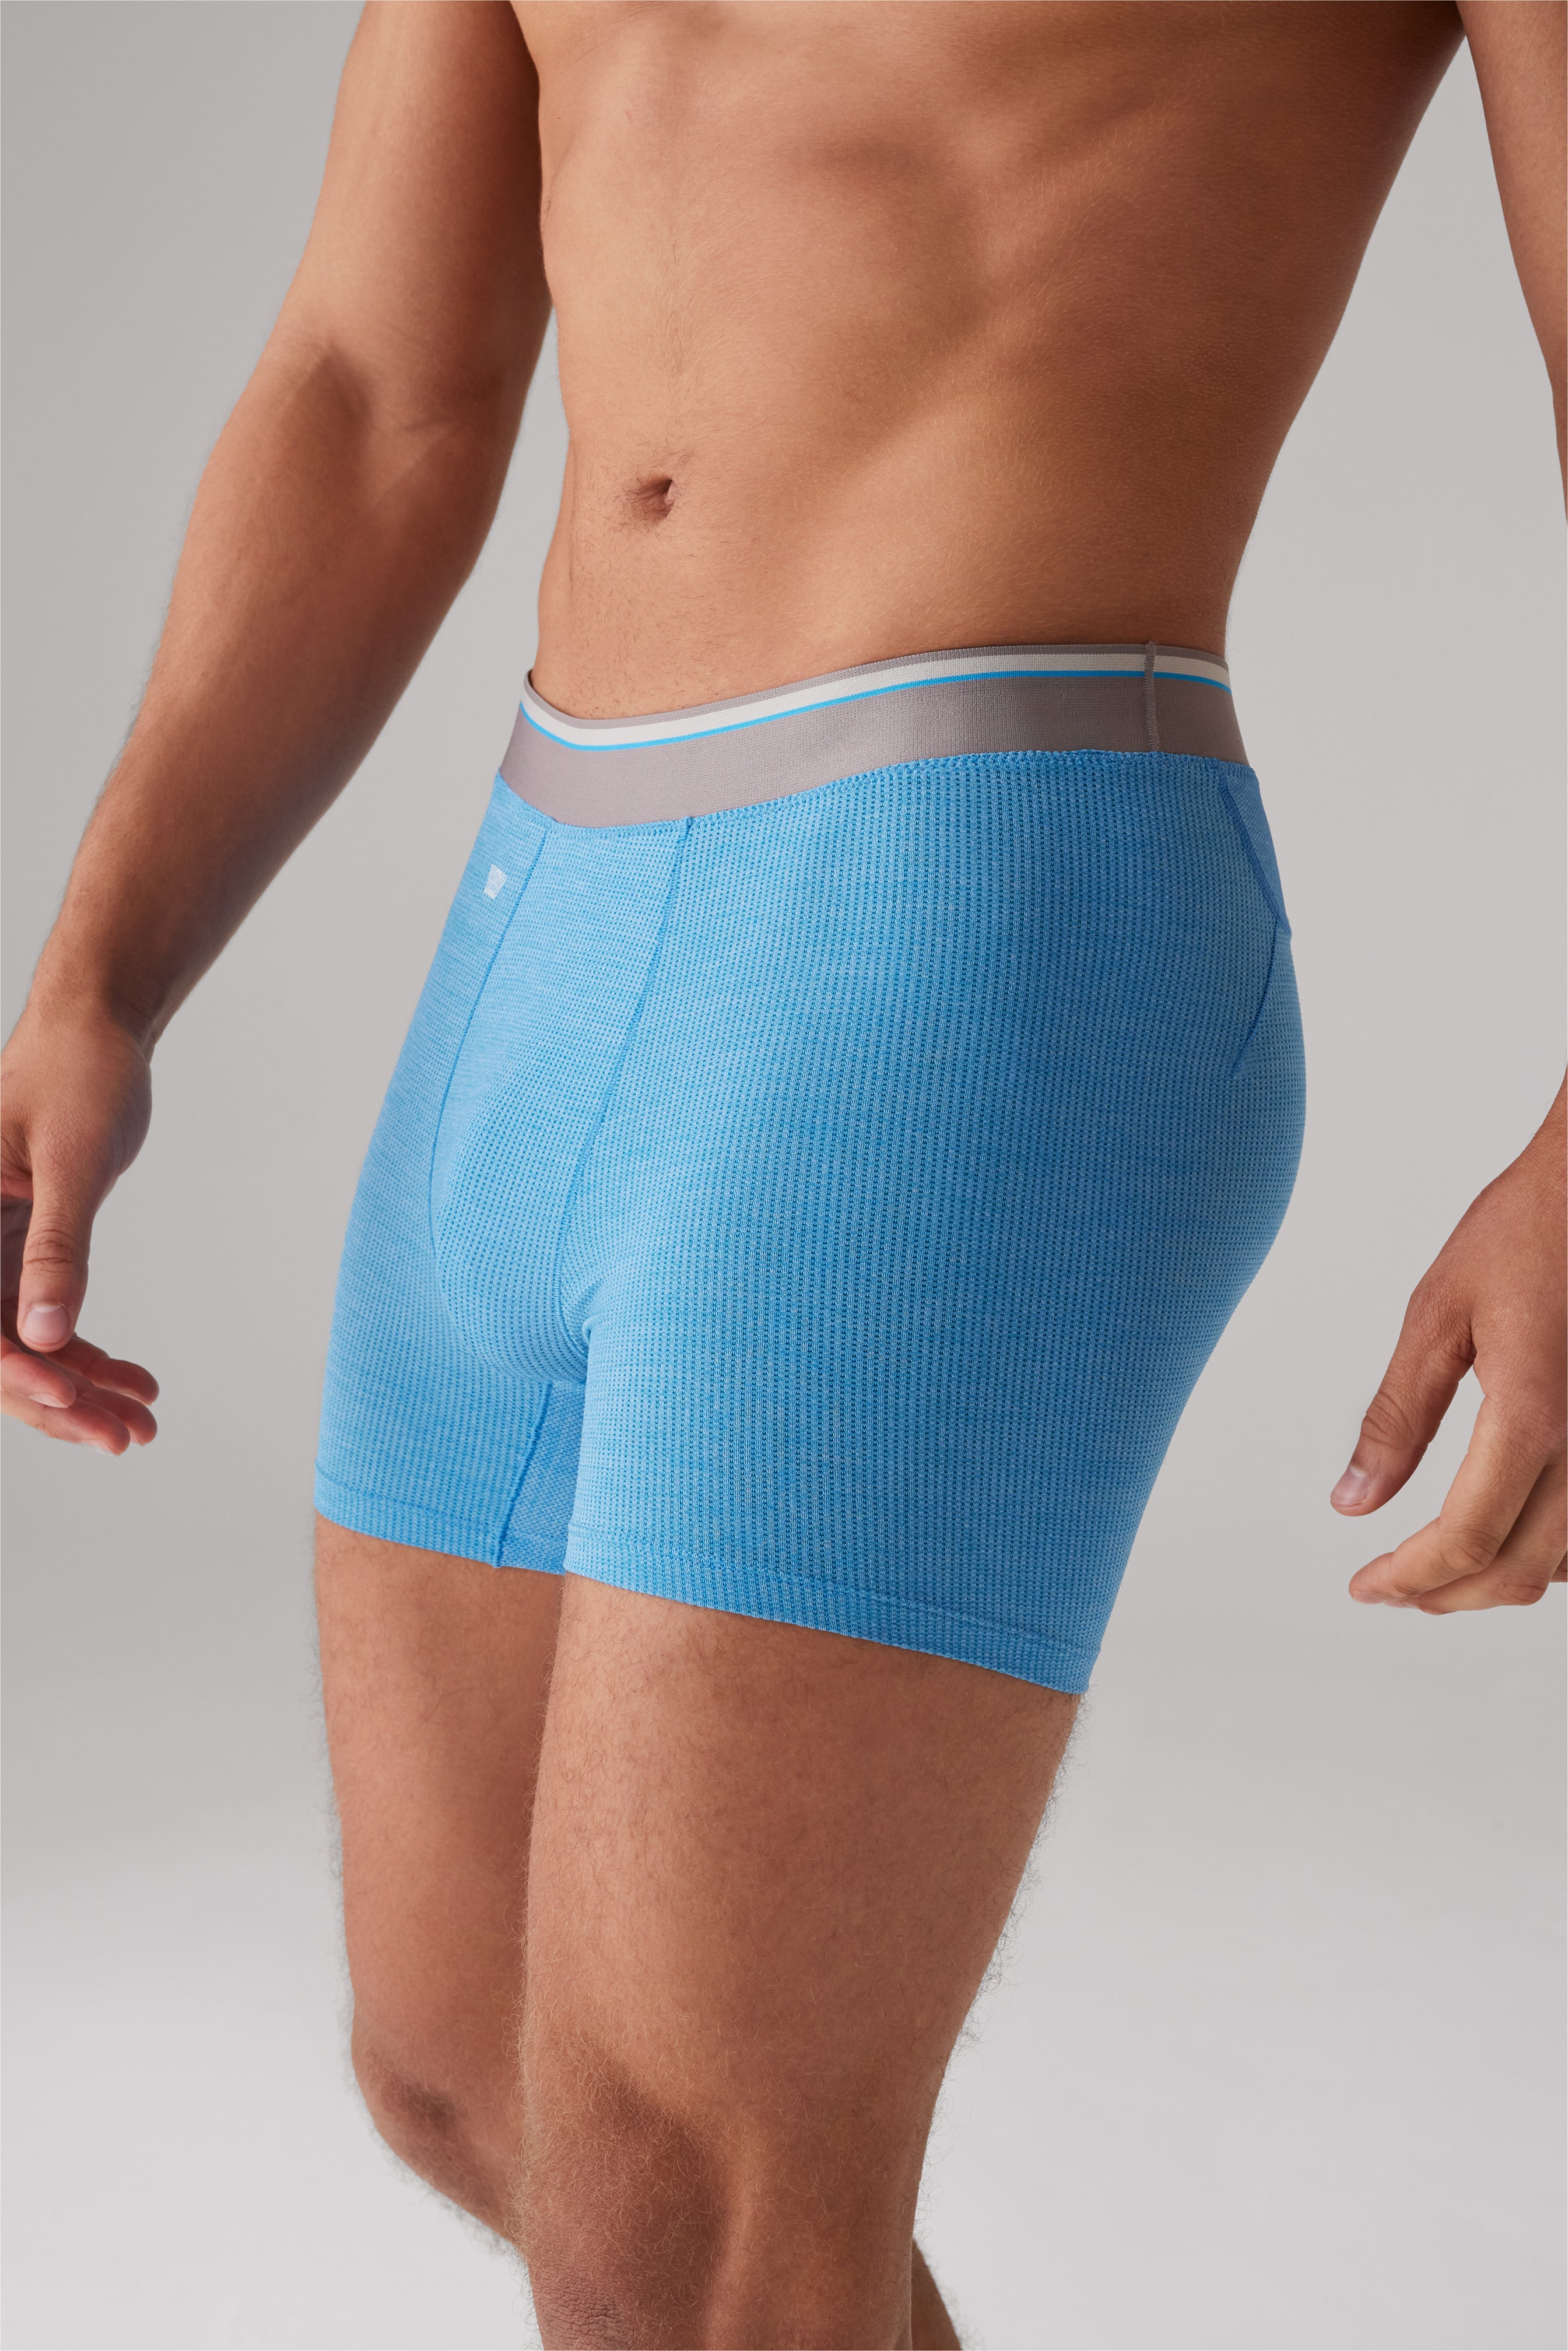 Mrat Seamless Briefs Cotton Soft Panty For Teens Men's Underwear Swim  Trunks Mid-waist Printed Men's Boxer Swimming Shorts Womens Underwear  Cotton